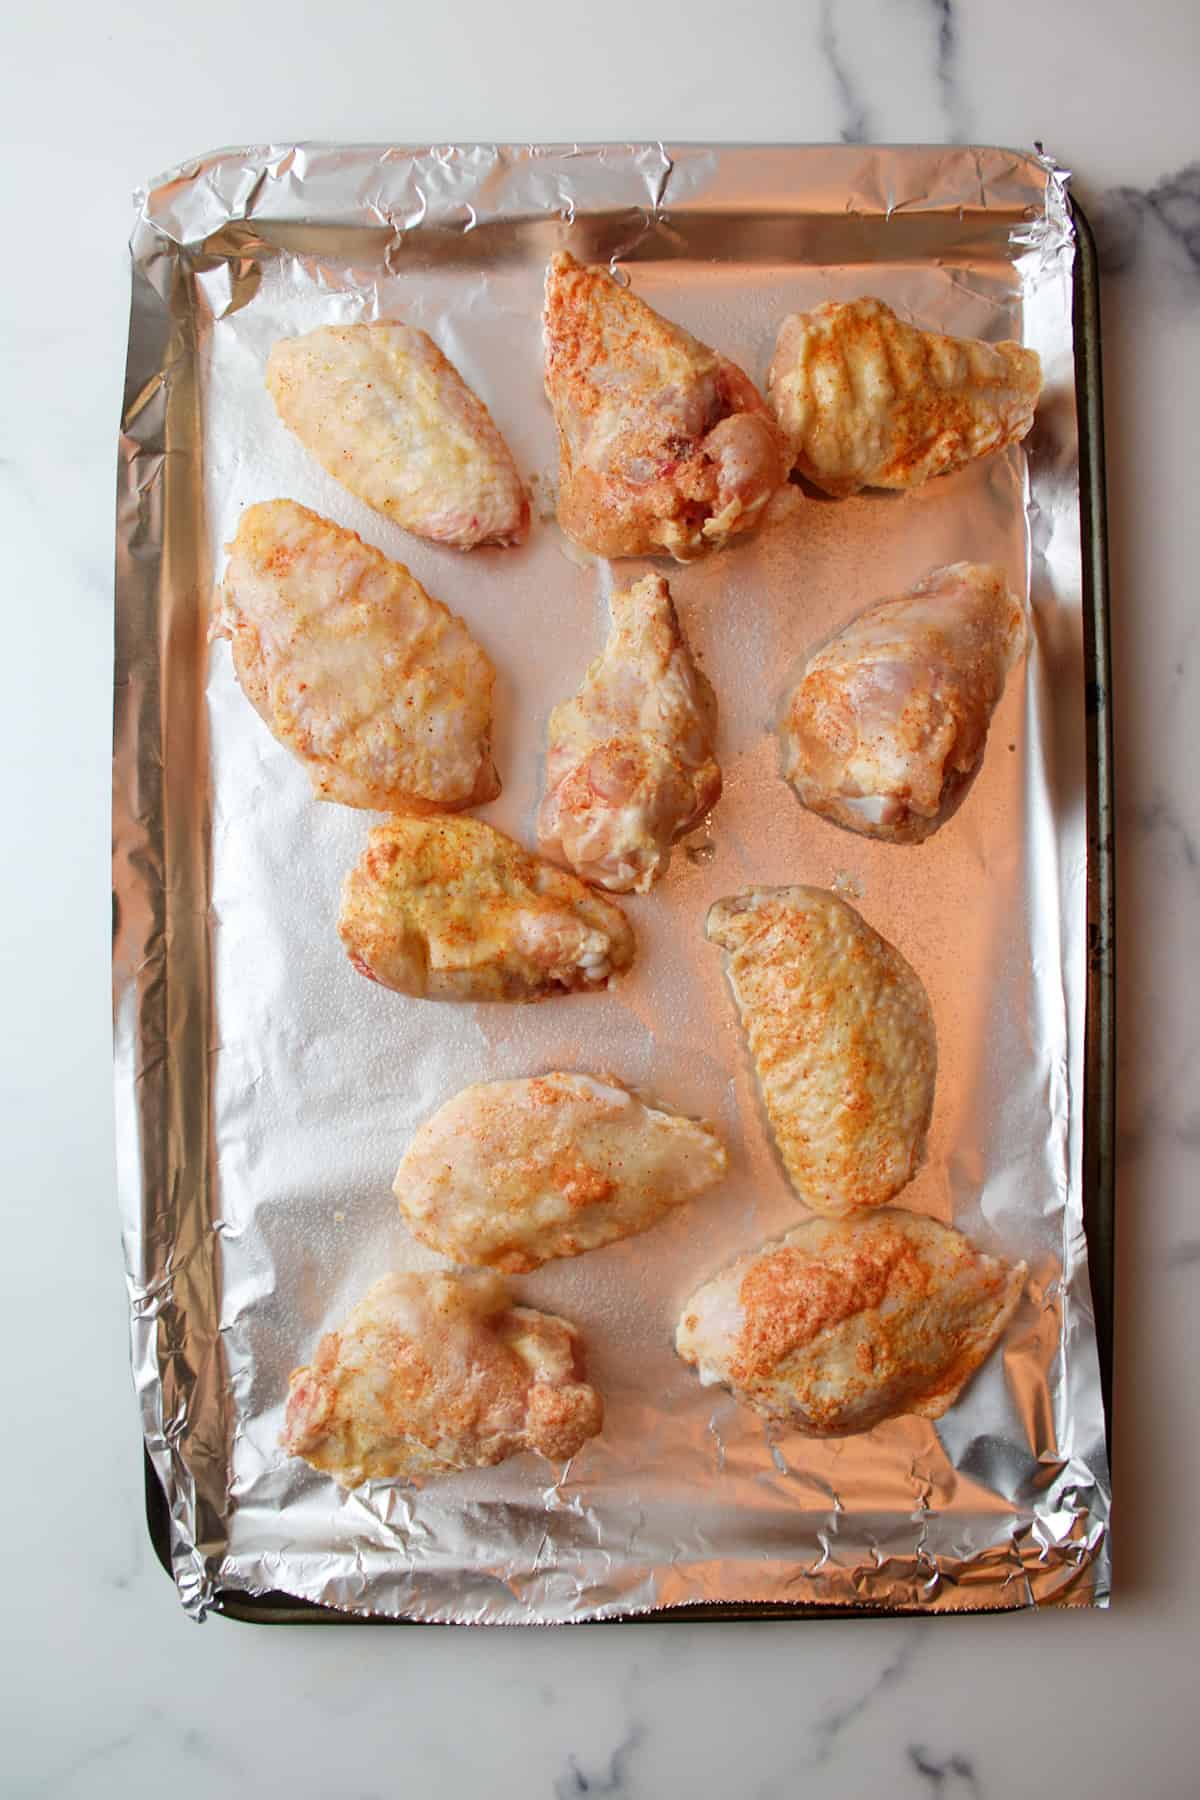 seasoned chicken wings on a foil lined baking sheet.